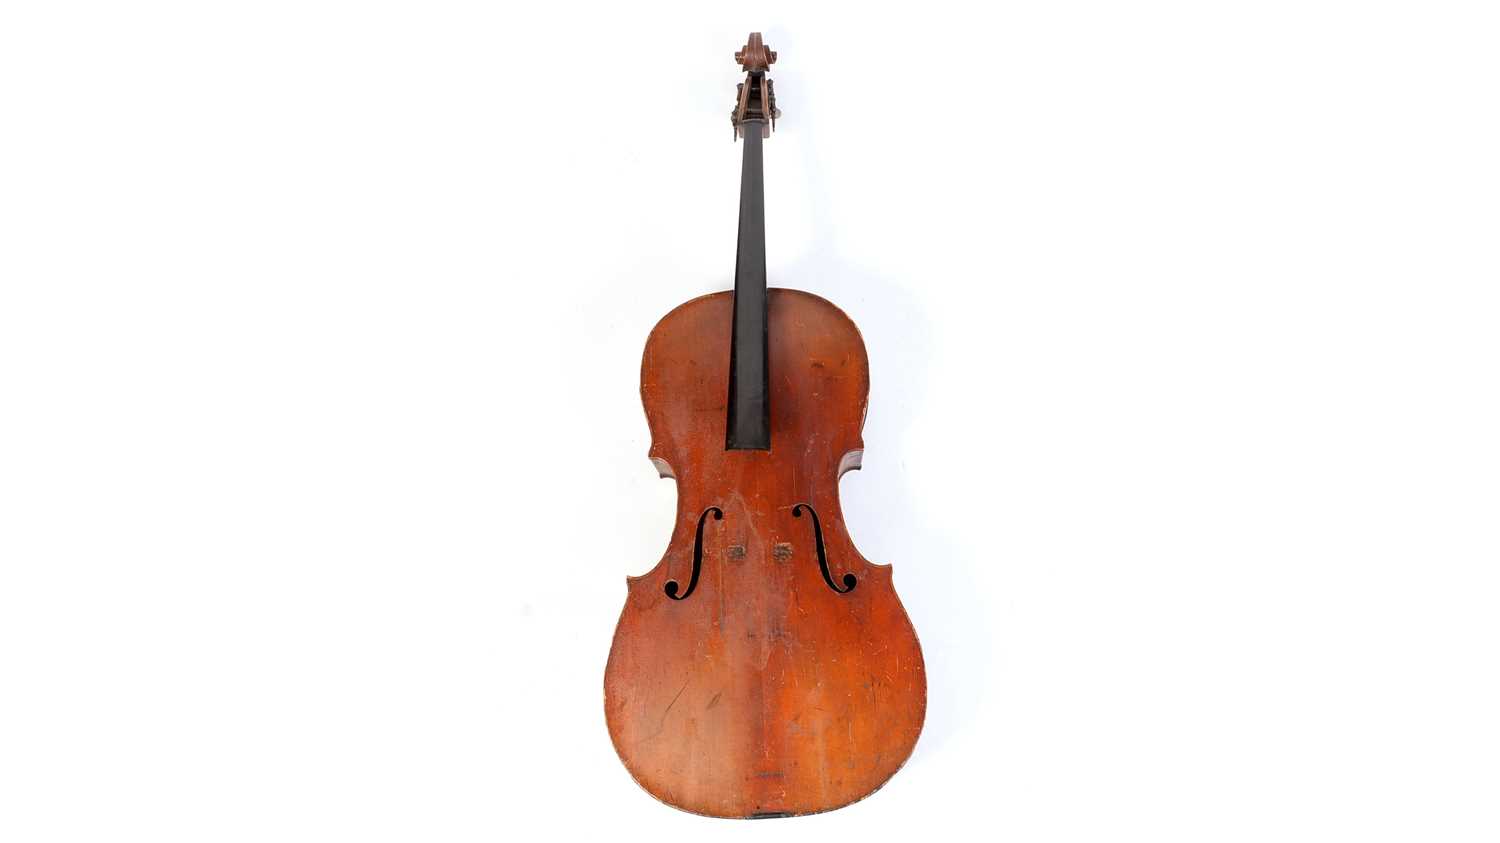 761 - A German cello